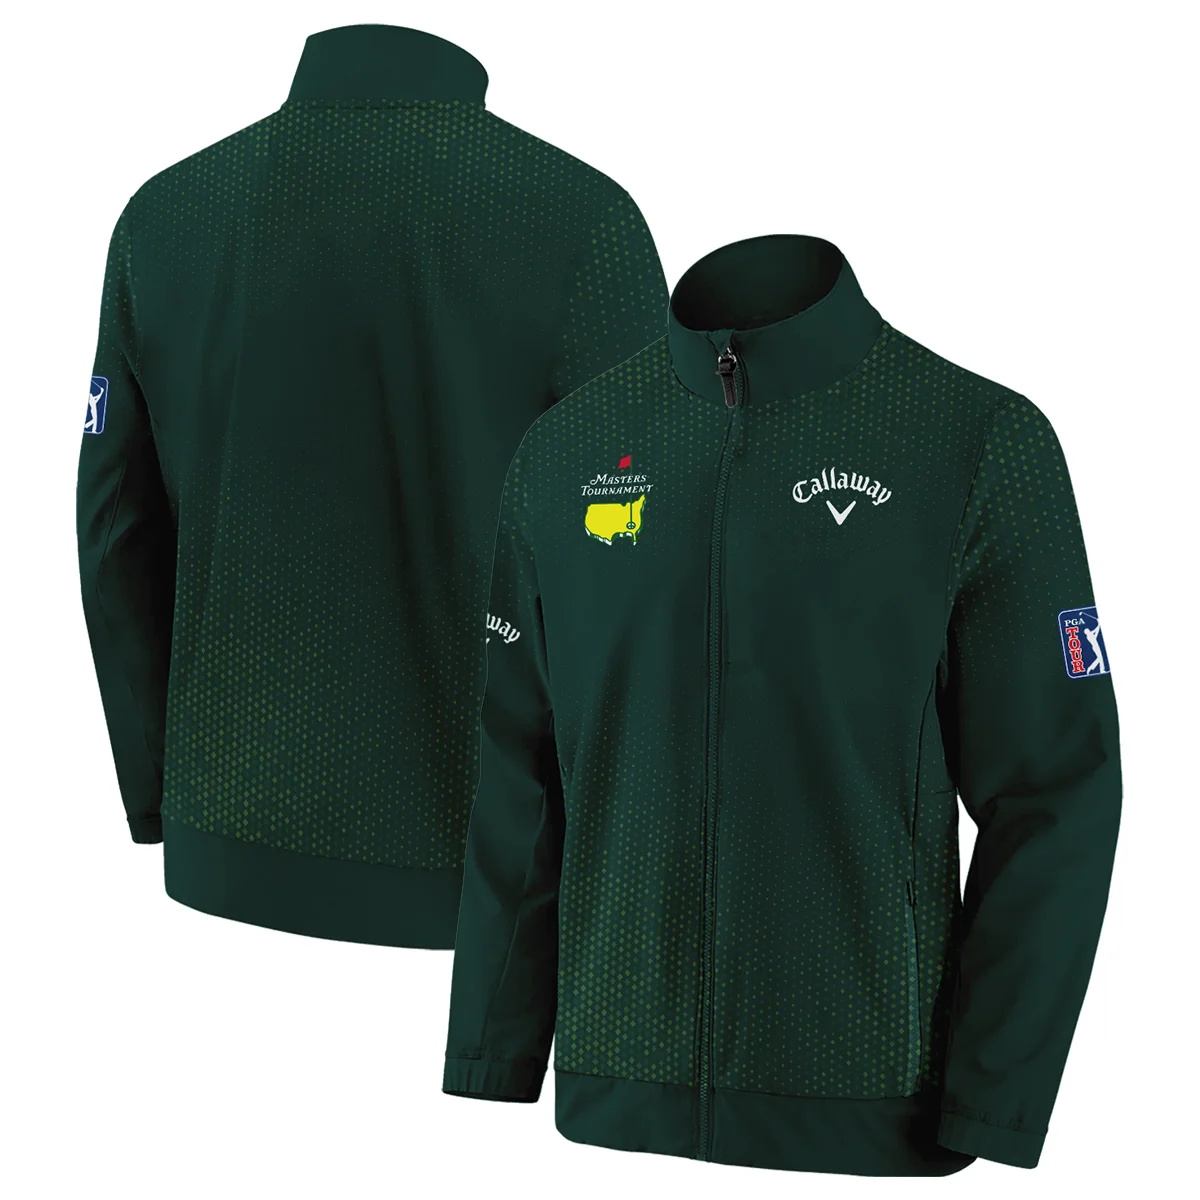 Golf Sport Masters Tournament Callaway Zipper Hoodie Shirt Sports Dinamond Shape Dark Green Zipper Hoodie Shirt